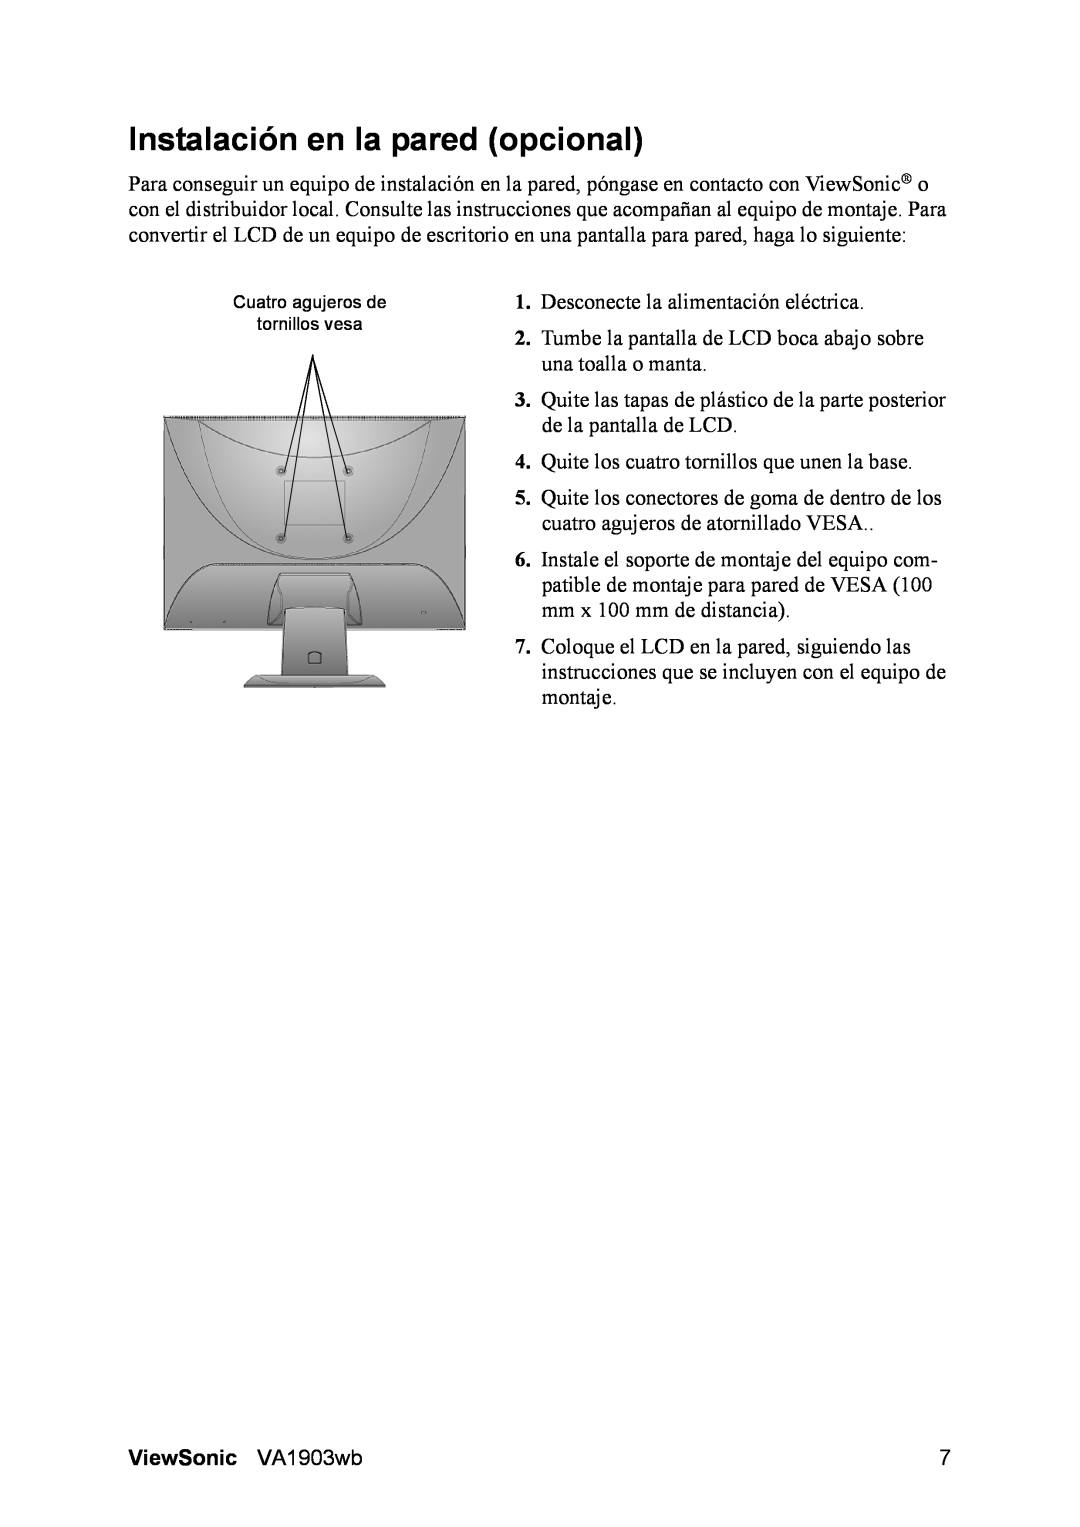 ViewSonic VA1903WB manual Instalación en la pared opcional, ViewSonic VA1903wb 